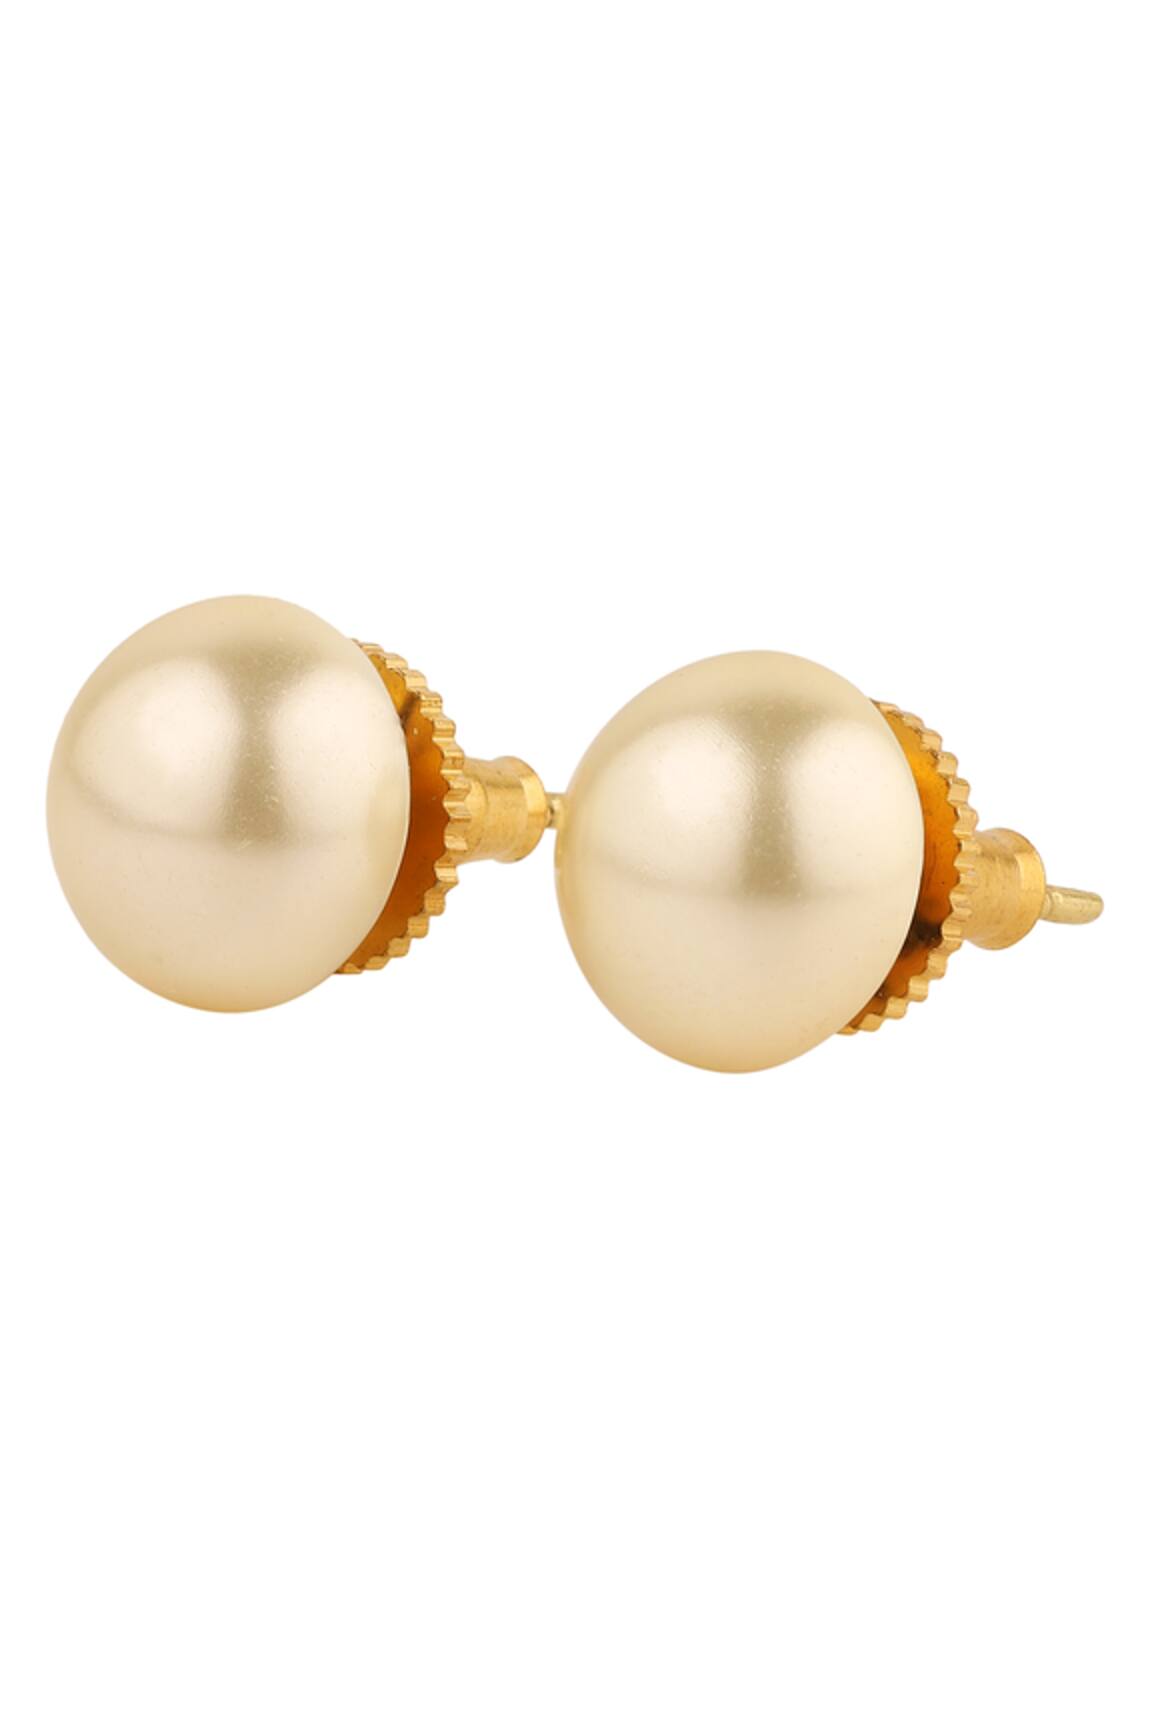 Beautiful Antique Pearl Earrings for Girls/Women | Meerzah